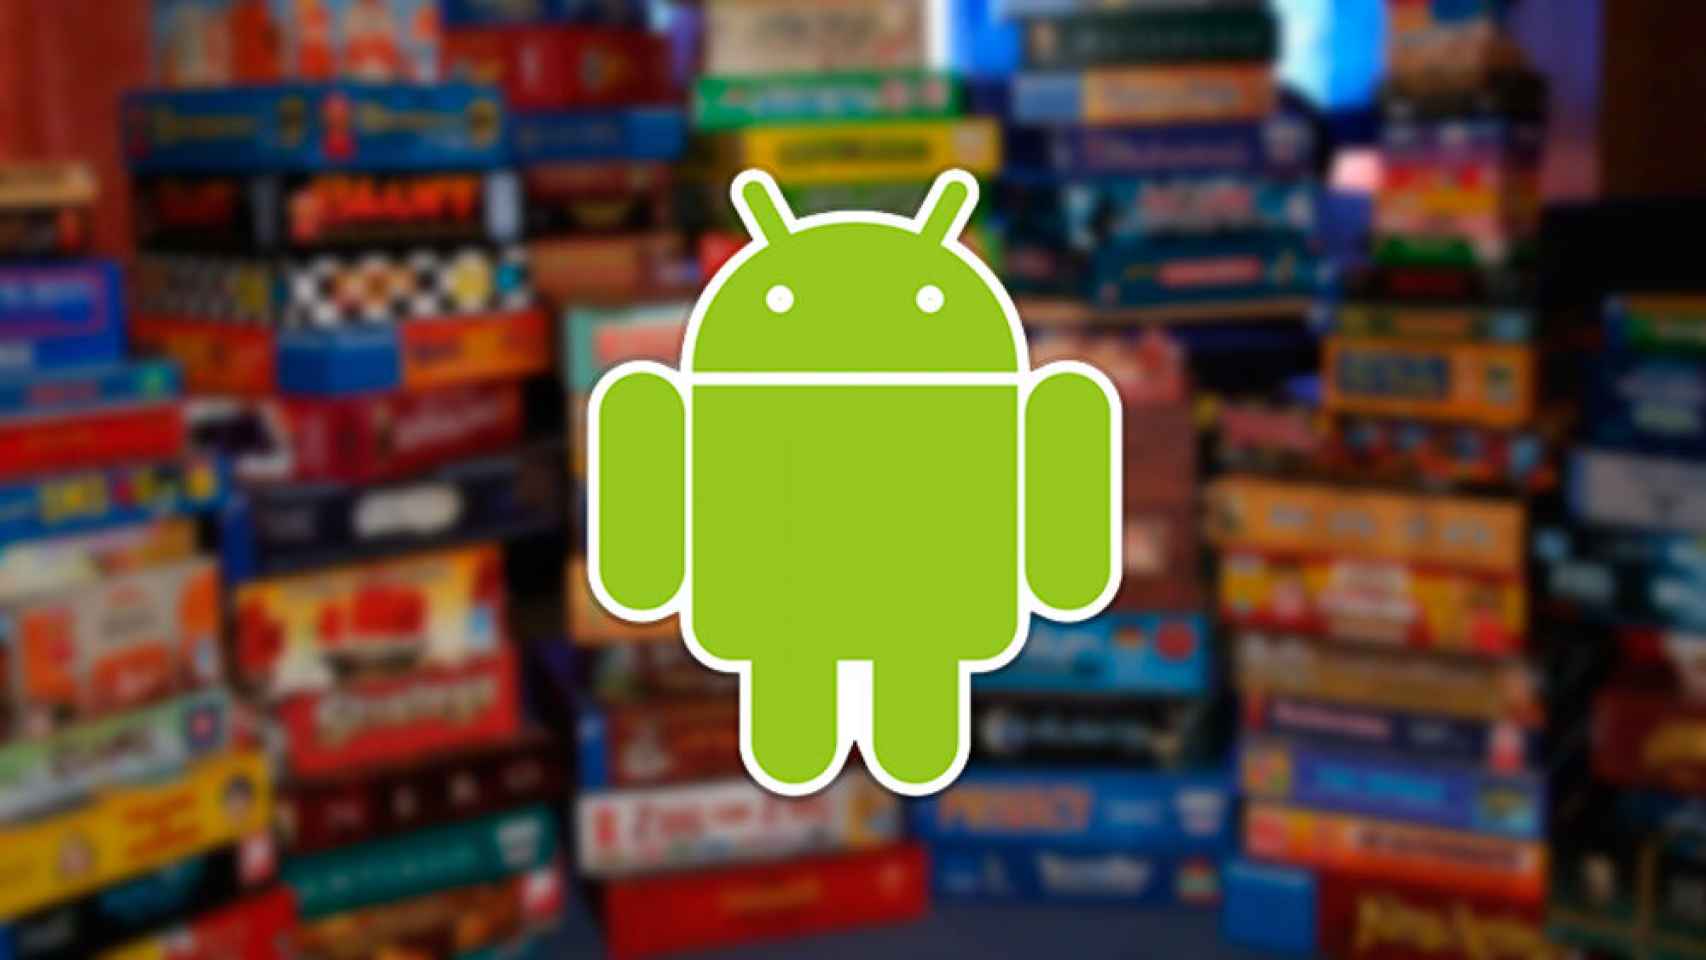 Juegos de mesa clásicos en tu Android